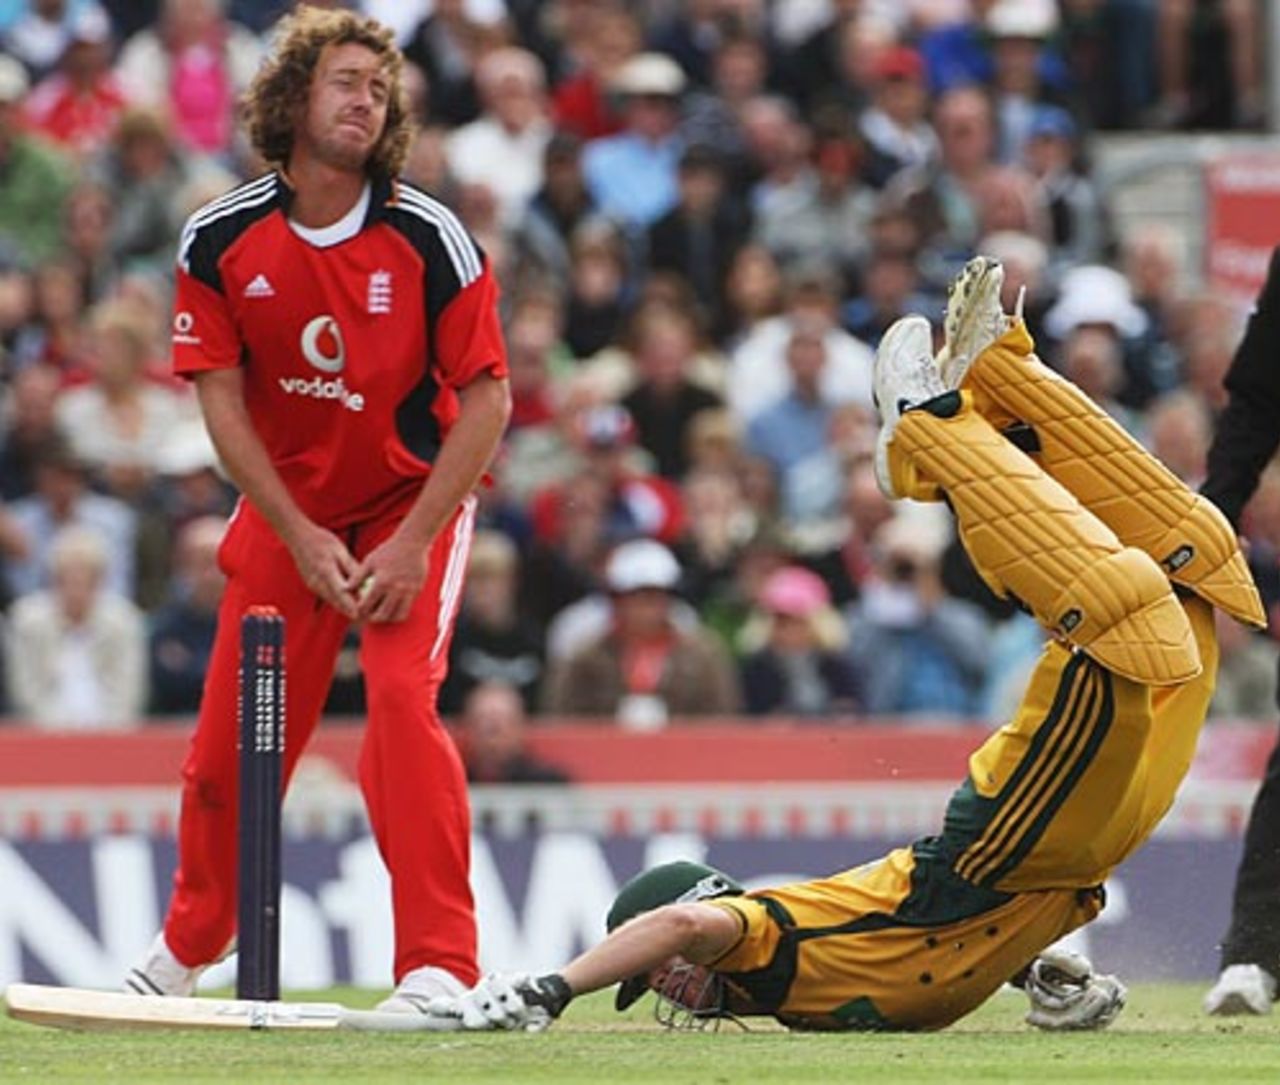 James Hopes dives to make his ground, England v Australia, 1st ODI, The Oval, September 4, 2009